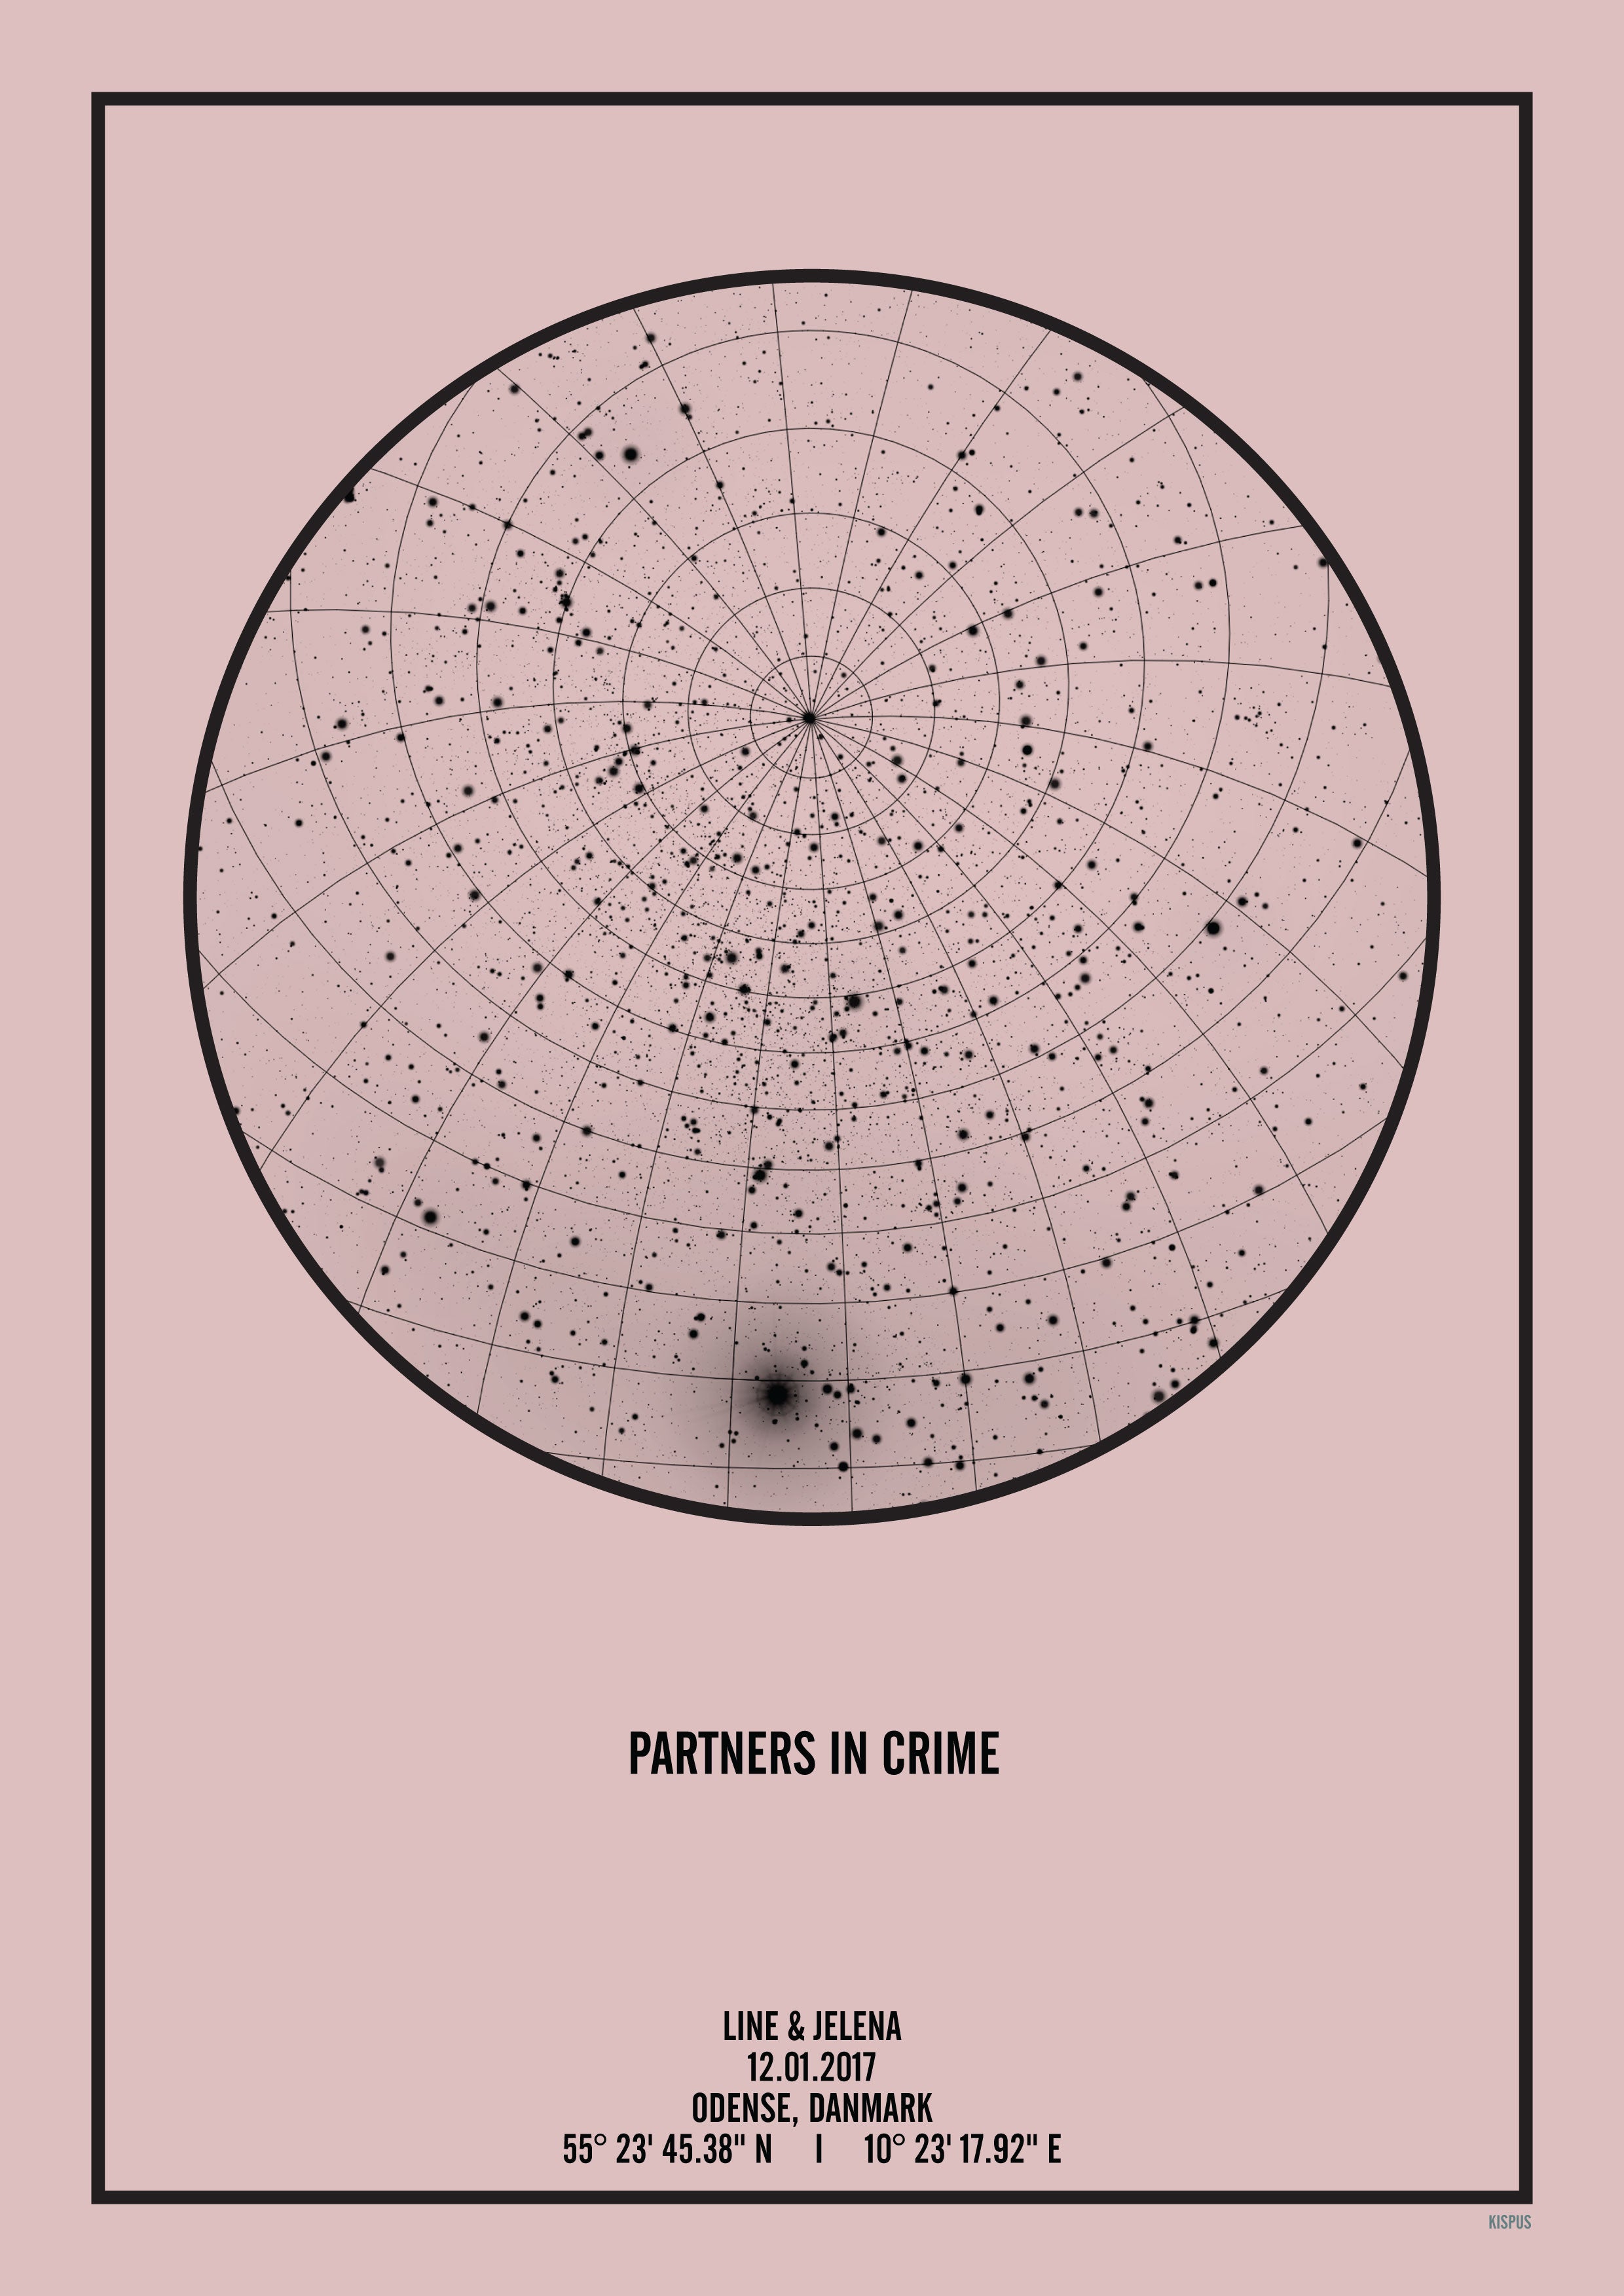 Se PERSONLIG STJERNEHIMMEL PLAKAT (LYSERØD) - 50x70 / Sort tekst og lyserød stjernehimmel / Stjernehimmel med gitter hos KISPUS